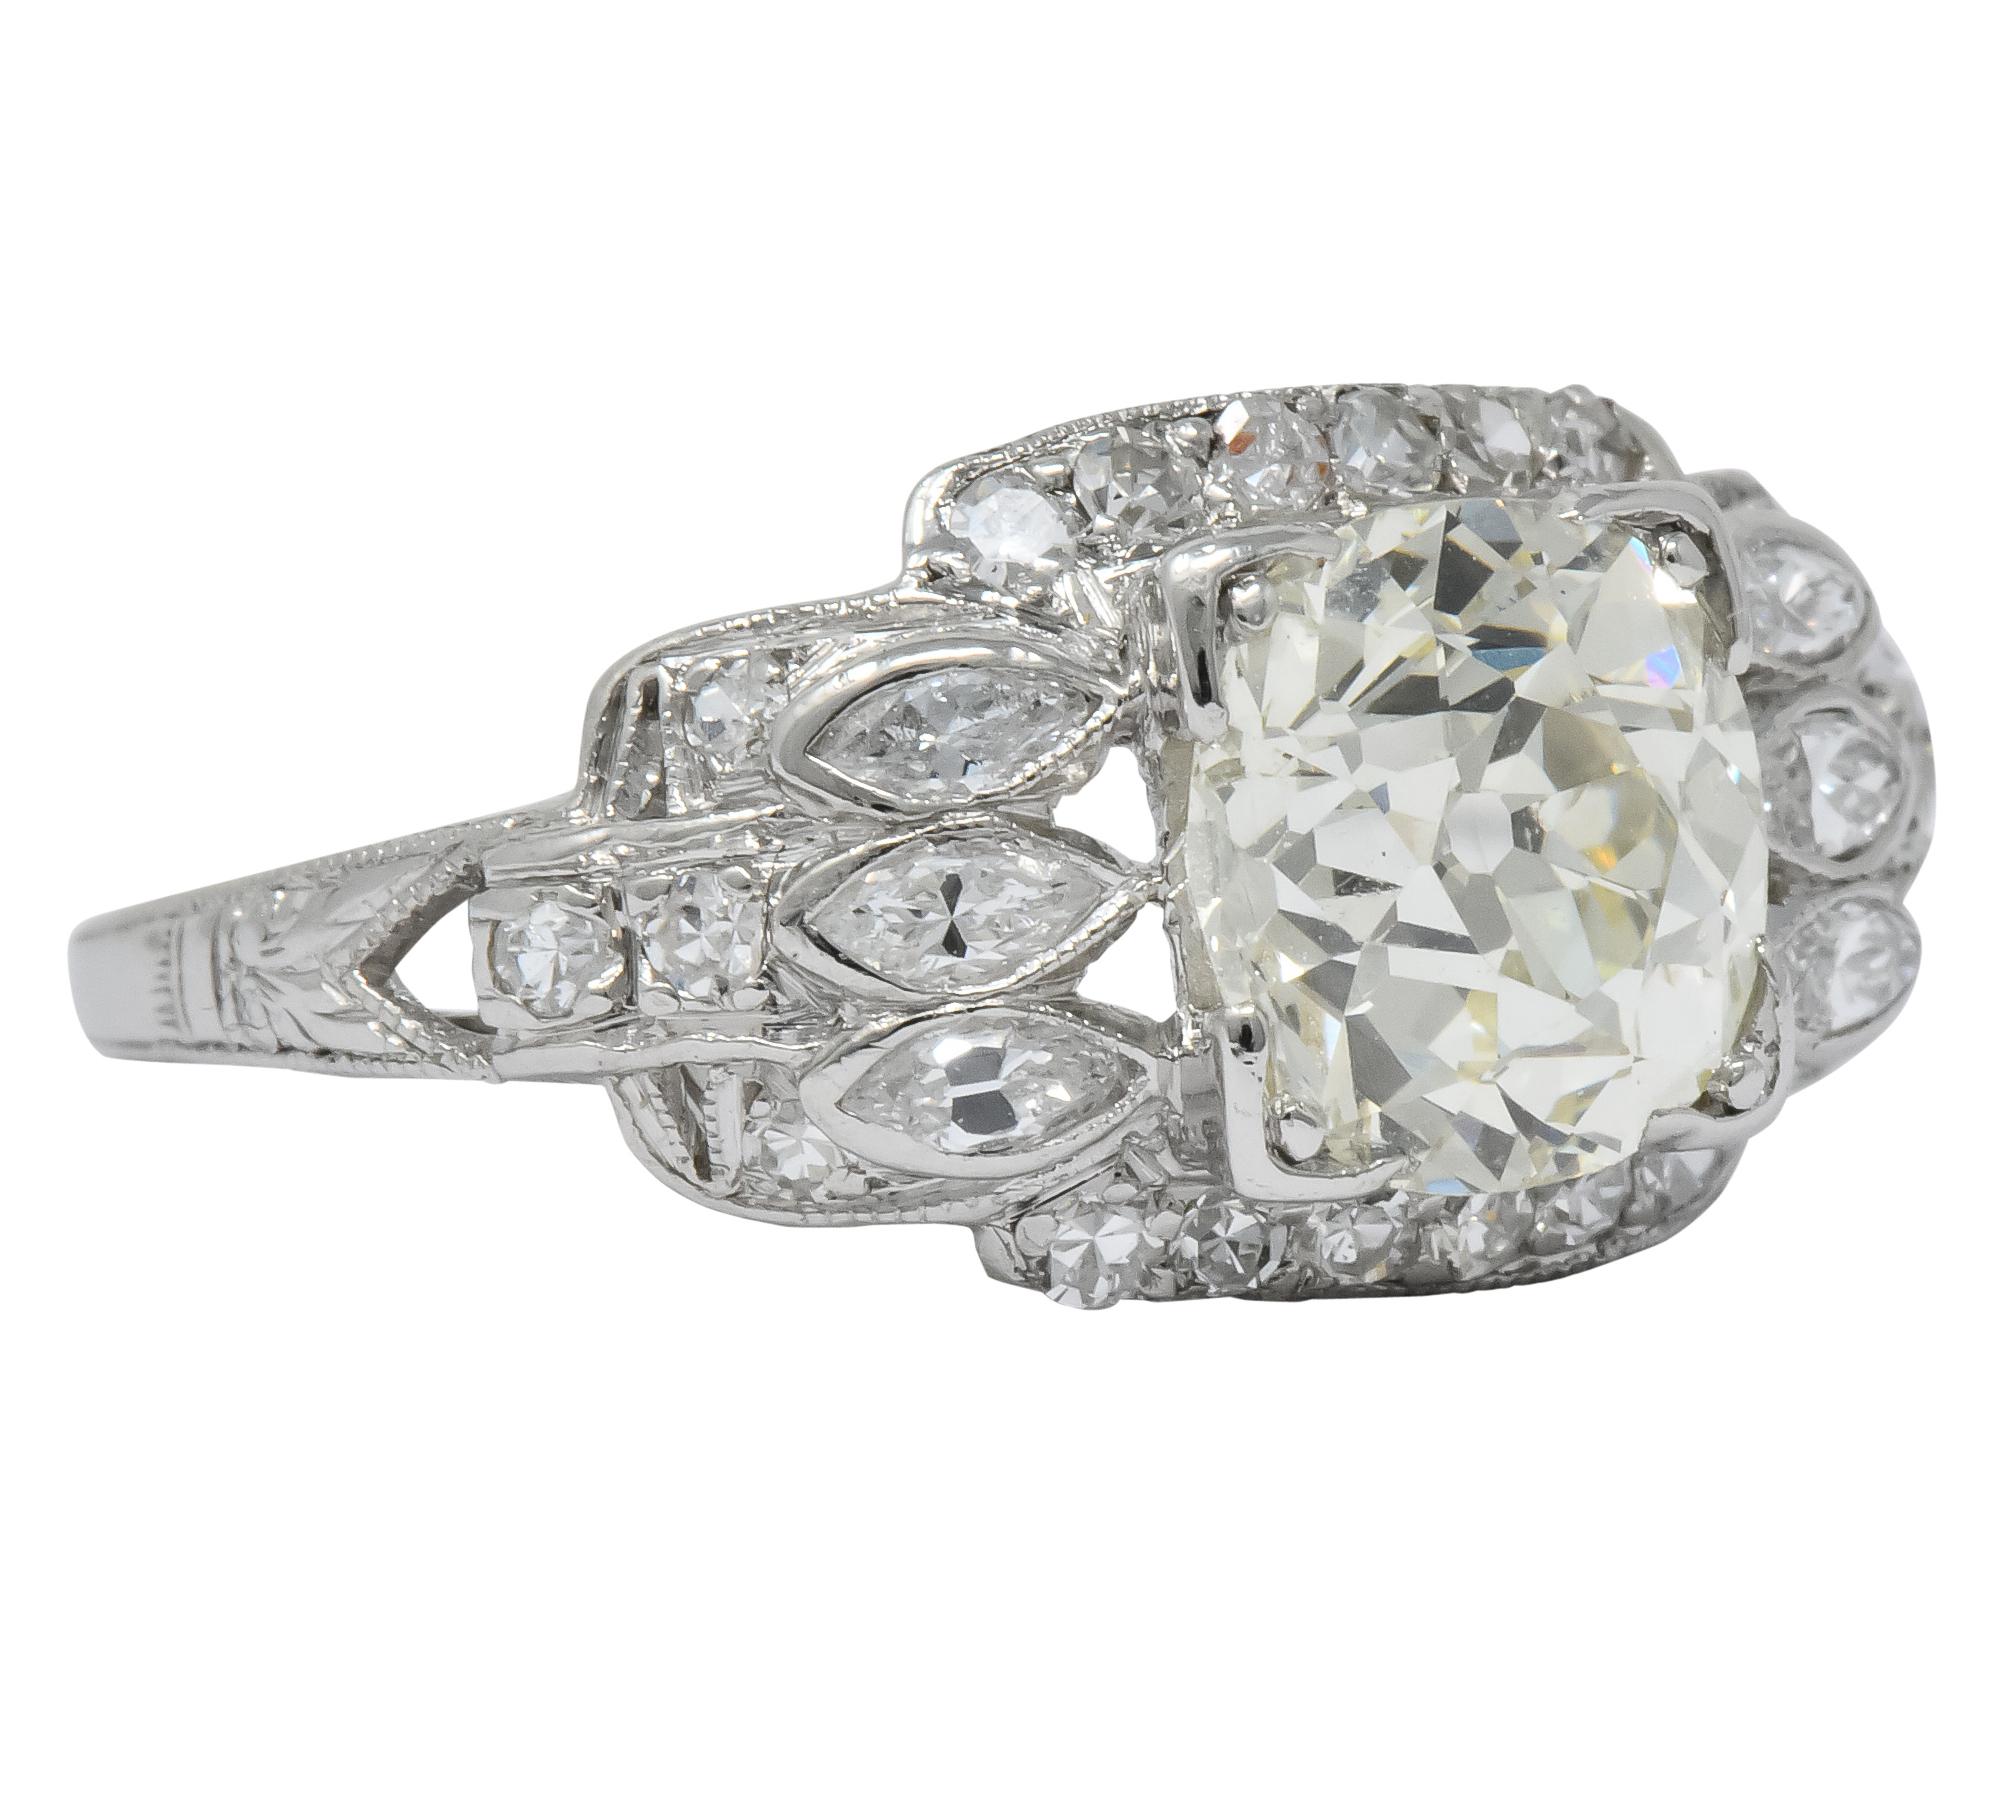 Retro William B. Ogush 2.05 Carat Diamond Platinum Engagement Ring